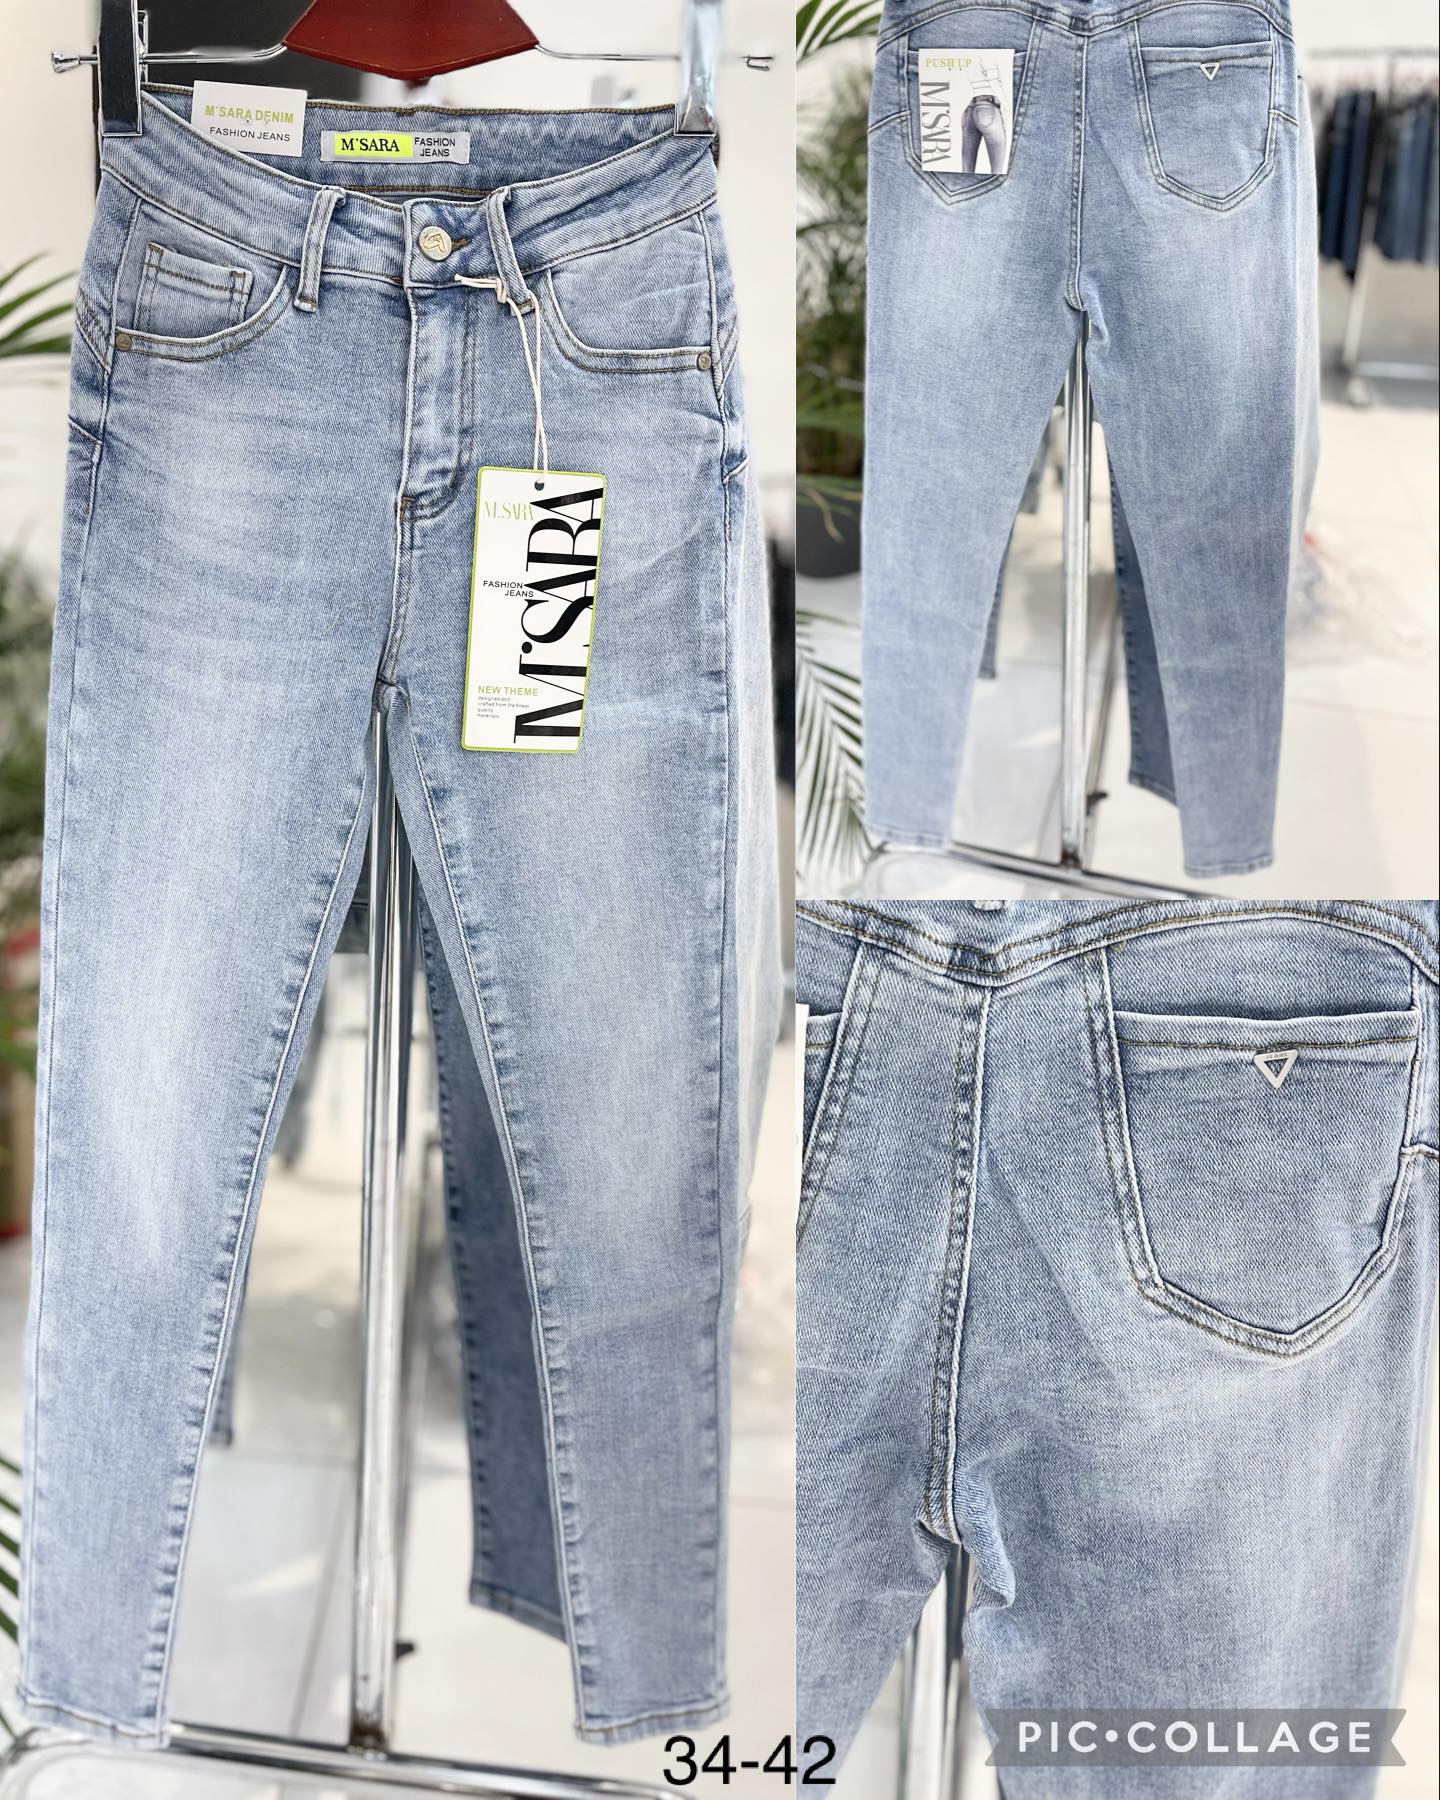 Spodnie damskie jeans Roz 34-42. 1 kolor .  Paczka 10szt